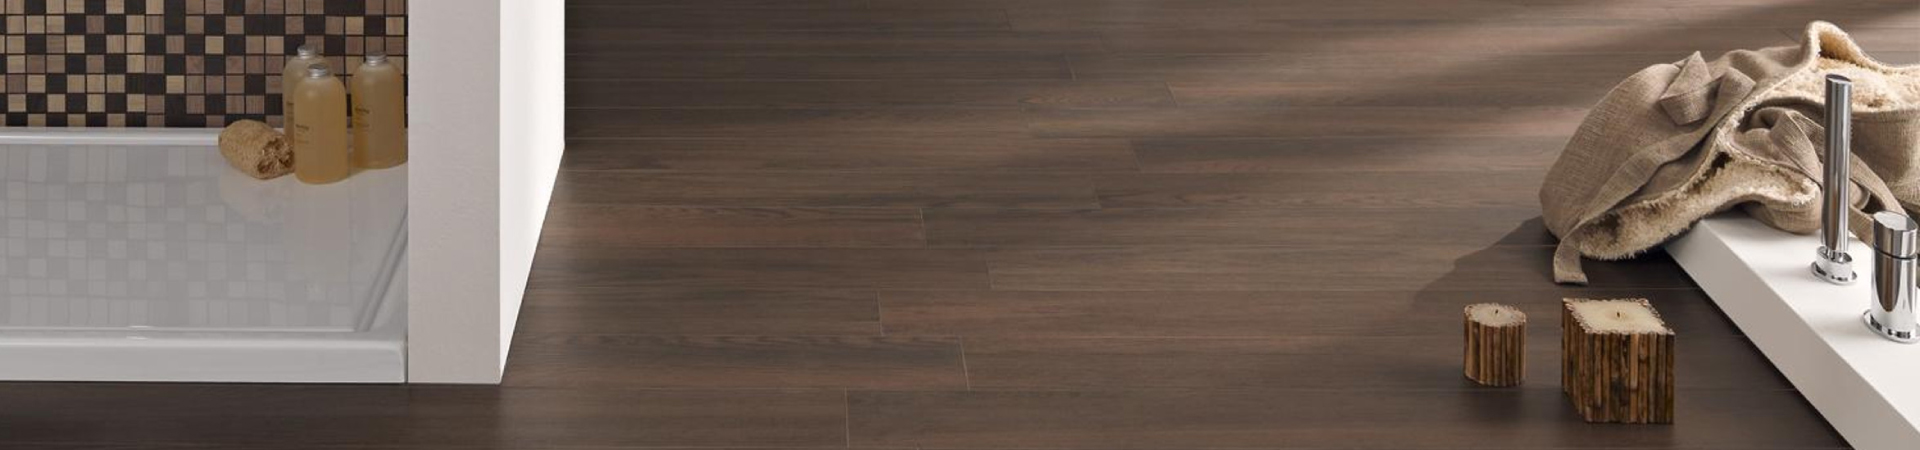 Houtlook tegels zijn een perfect alternatief voor een houten vloer. Eenvoudig in onderhoud duurzaam en toe te passen in elke ruimte.